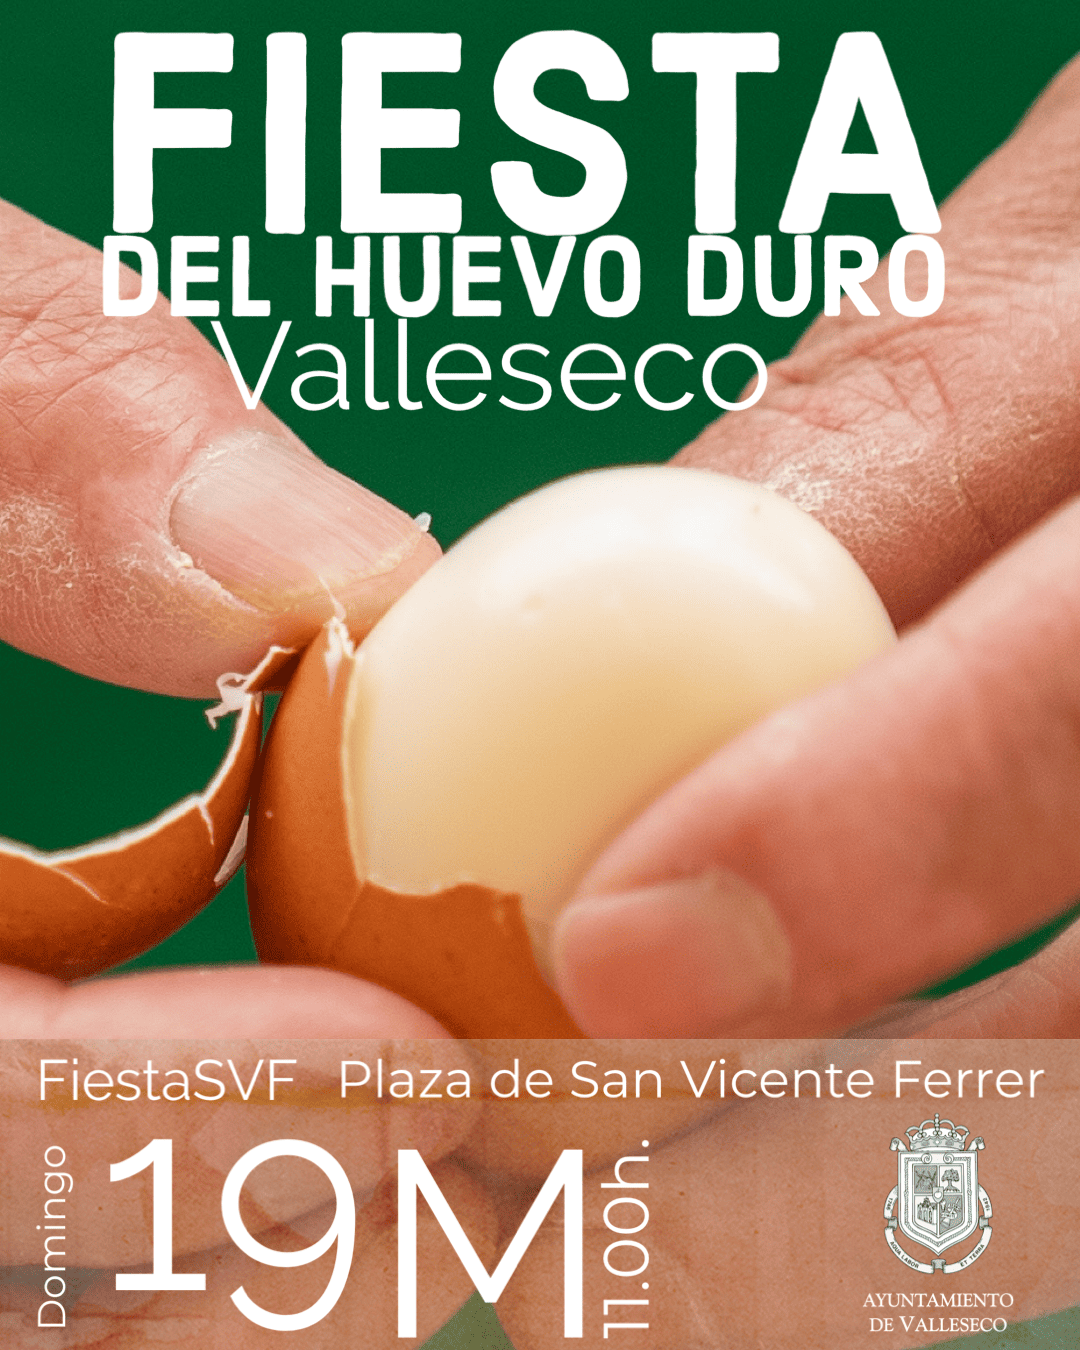 Nueva edición de la Gran Fiesta del Huevo Duro de Valleseco